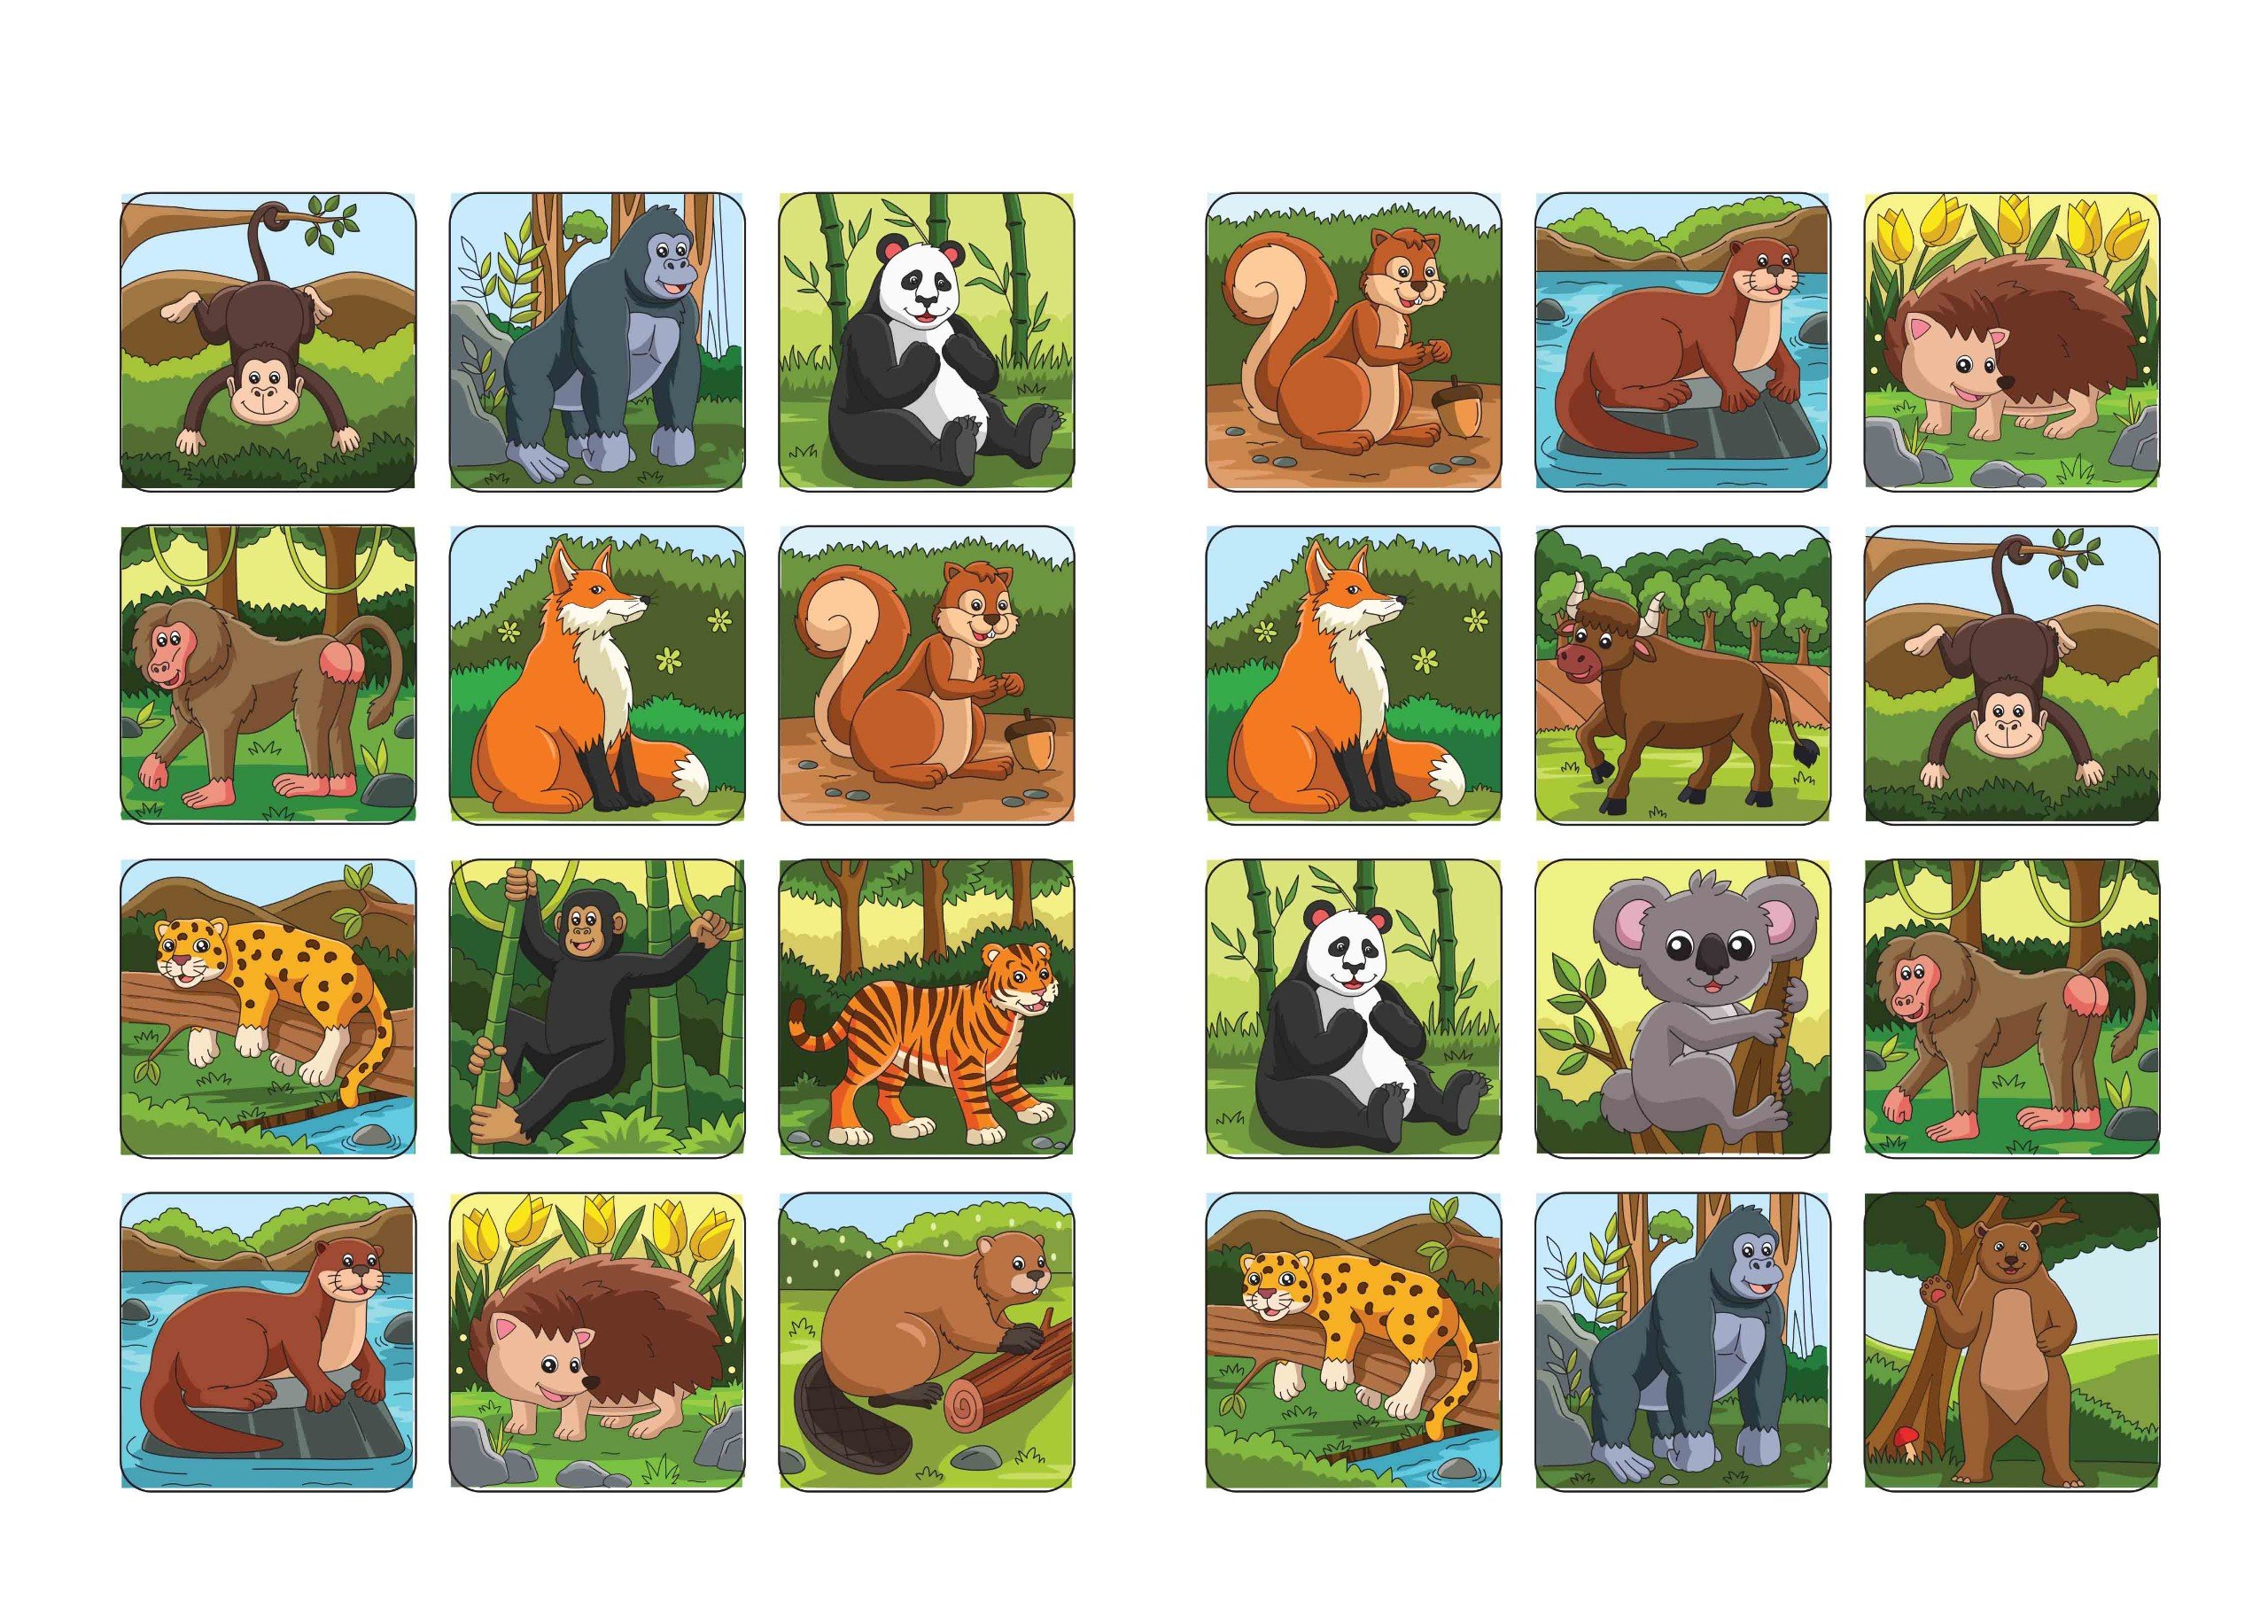 Bé tô màu: Khám phá rừng xanh hùng vĩ (20+ hình dán sticker) (VT)